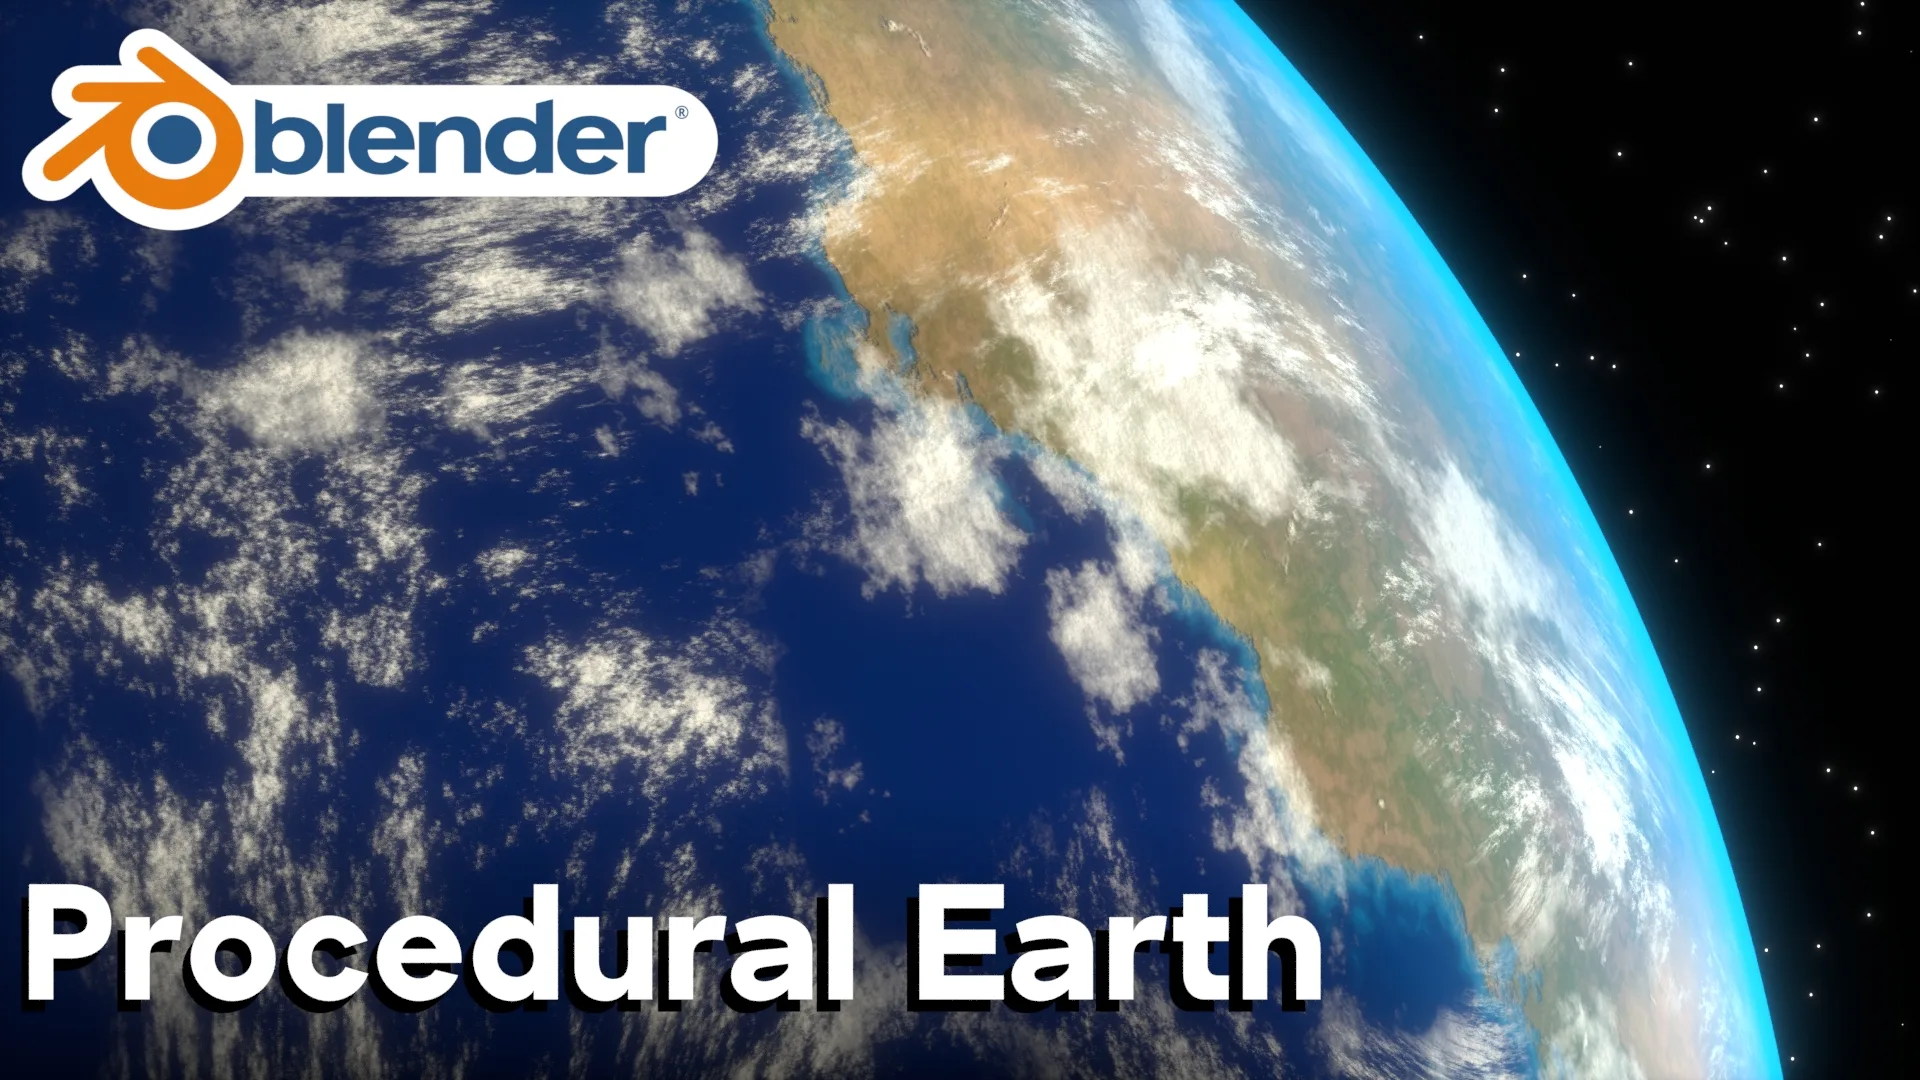 Completely Procedural Earth (Blender)